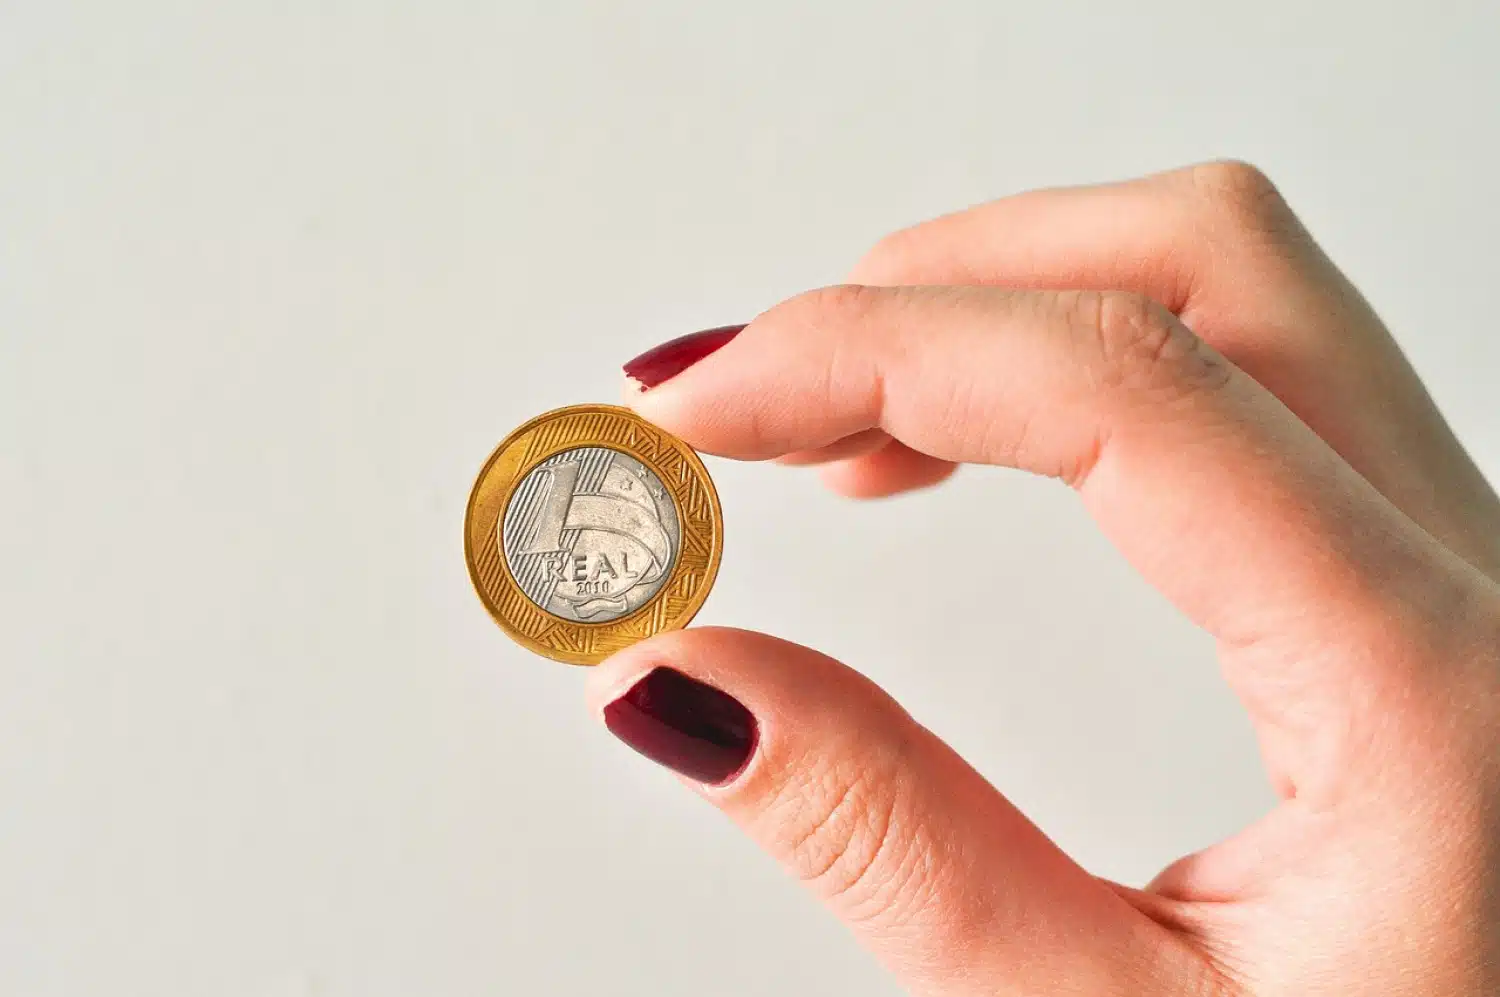  Thesaret e fshehura: Si të identifikoni dhe shisni 1 monedha të vërteta të rralla dhe të vlefshme